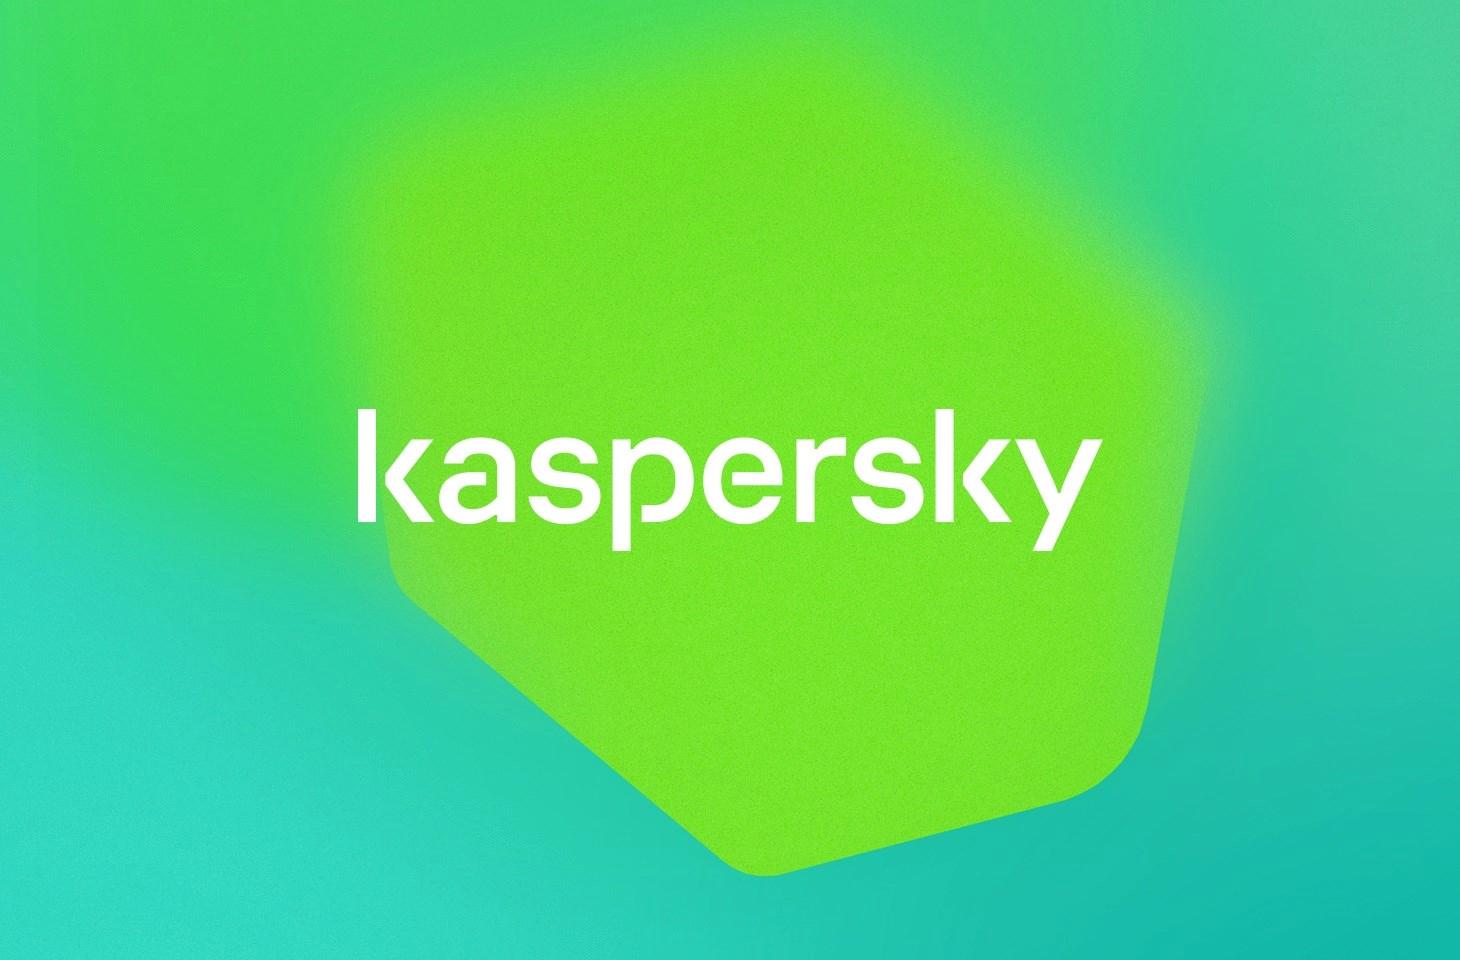 Kaspersky uyardı: Kentsel altyapıların ve IoT cihazlarının korunması kritik önemde